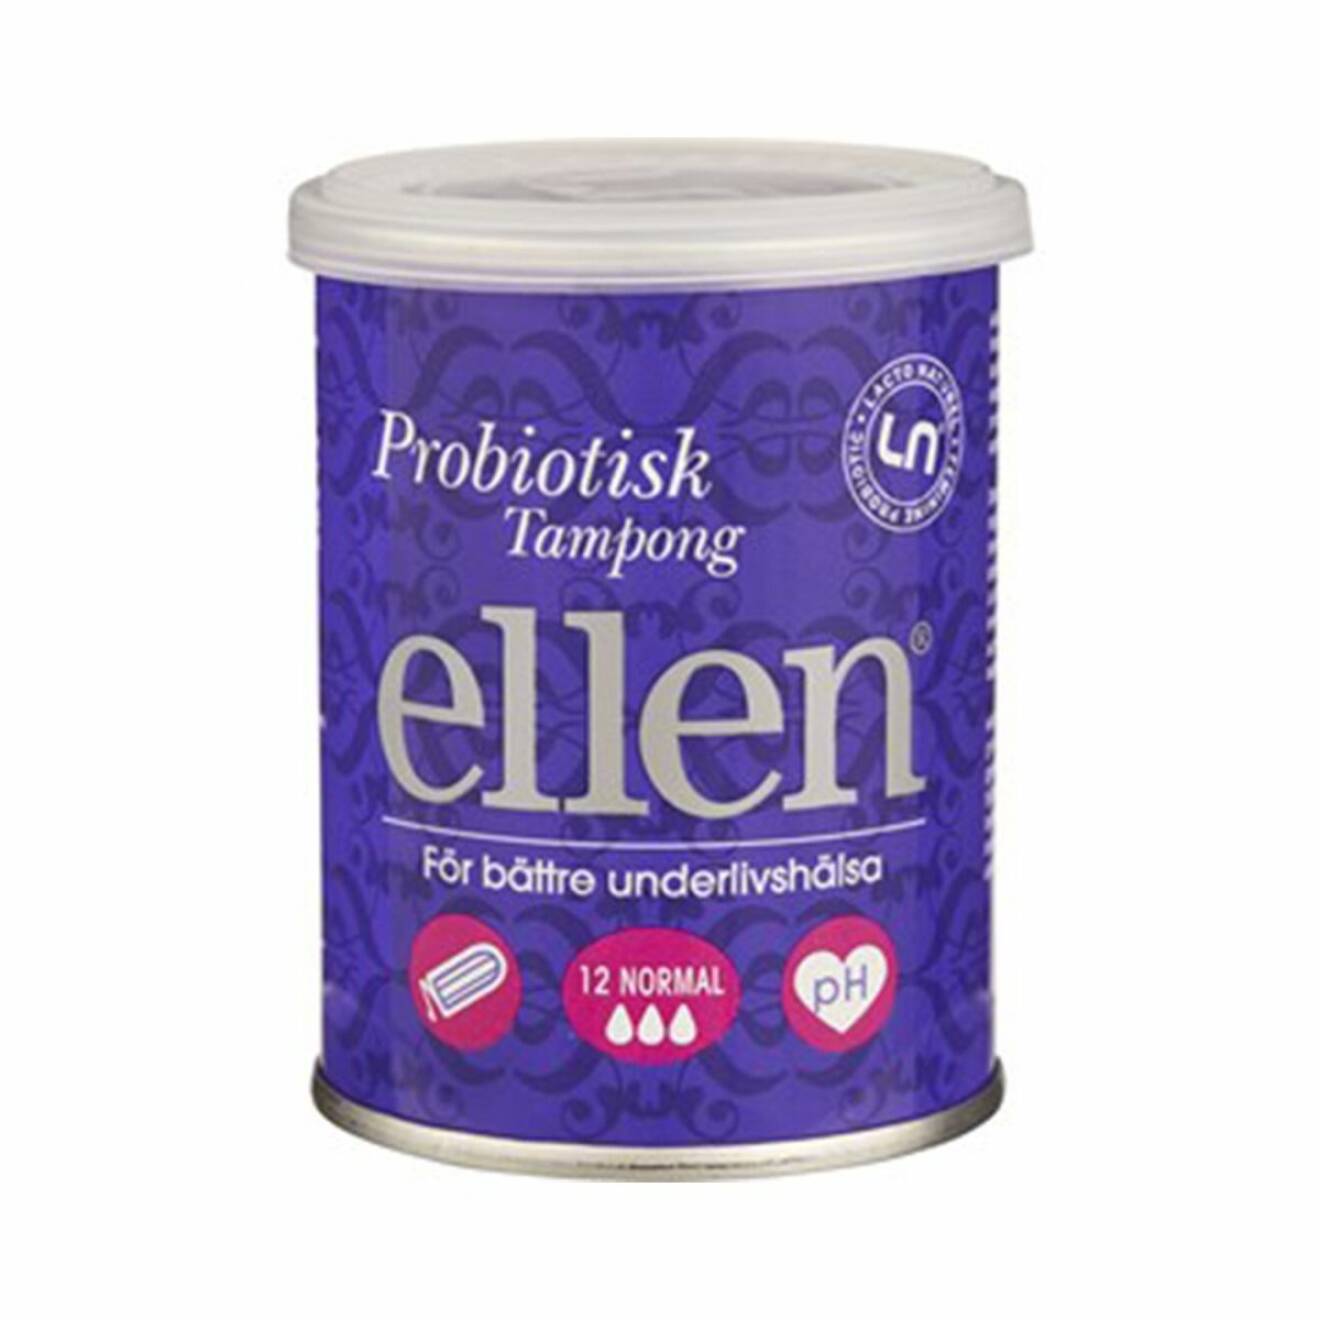 Ellen Probiotisk Tampong Normal 12 stycken